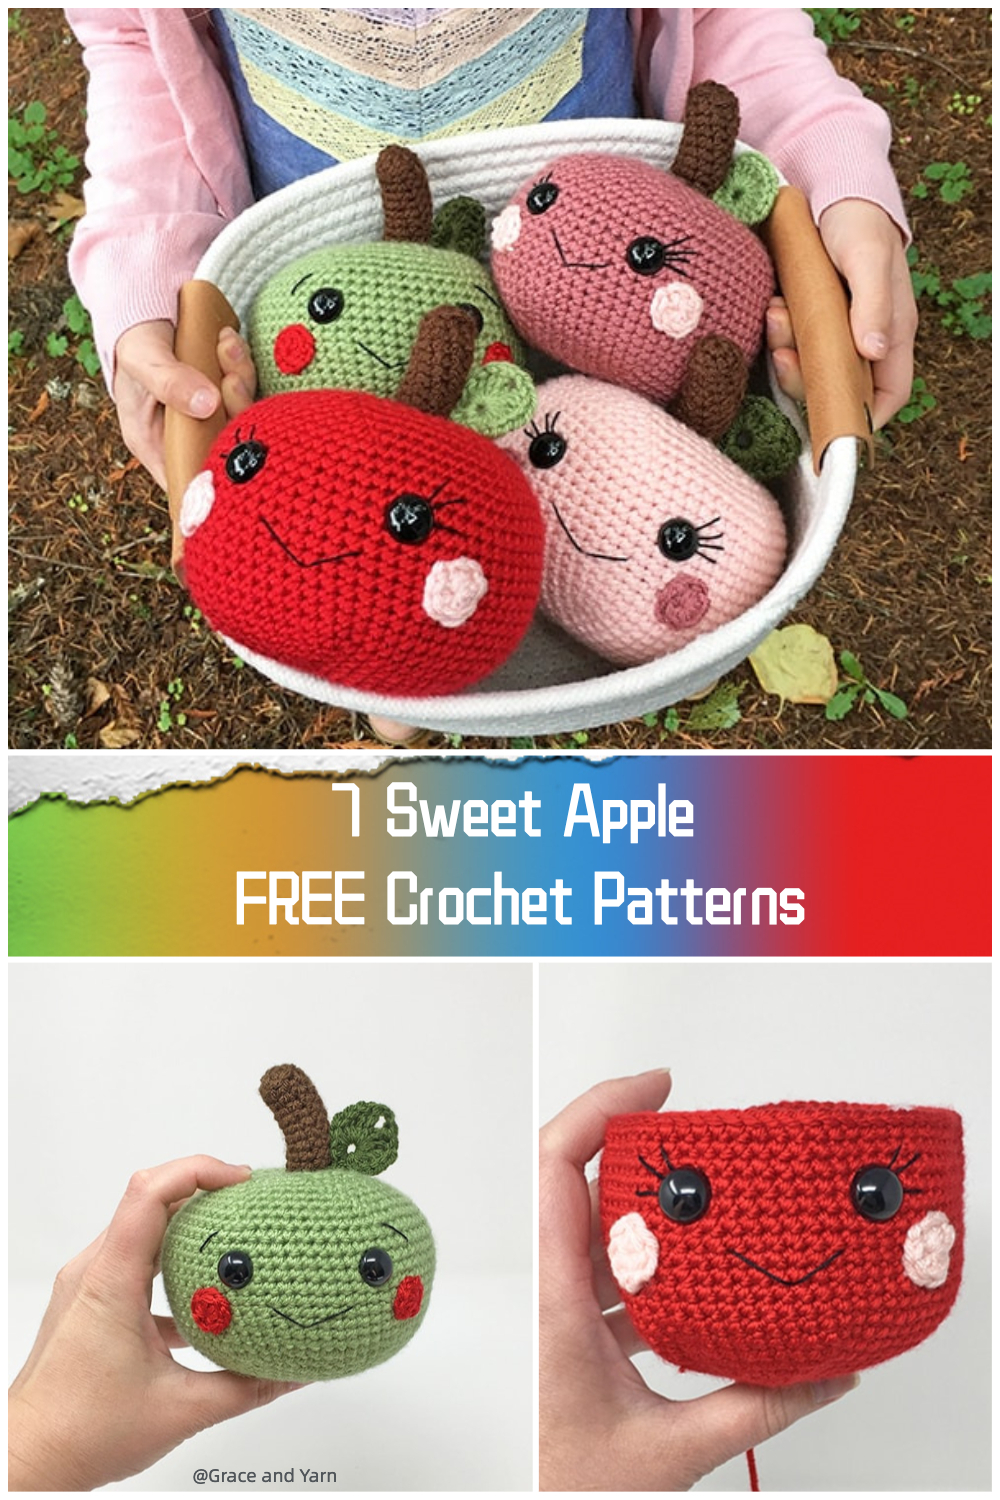  7 Sweet Apple FREE Crochet Patterns